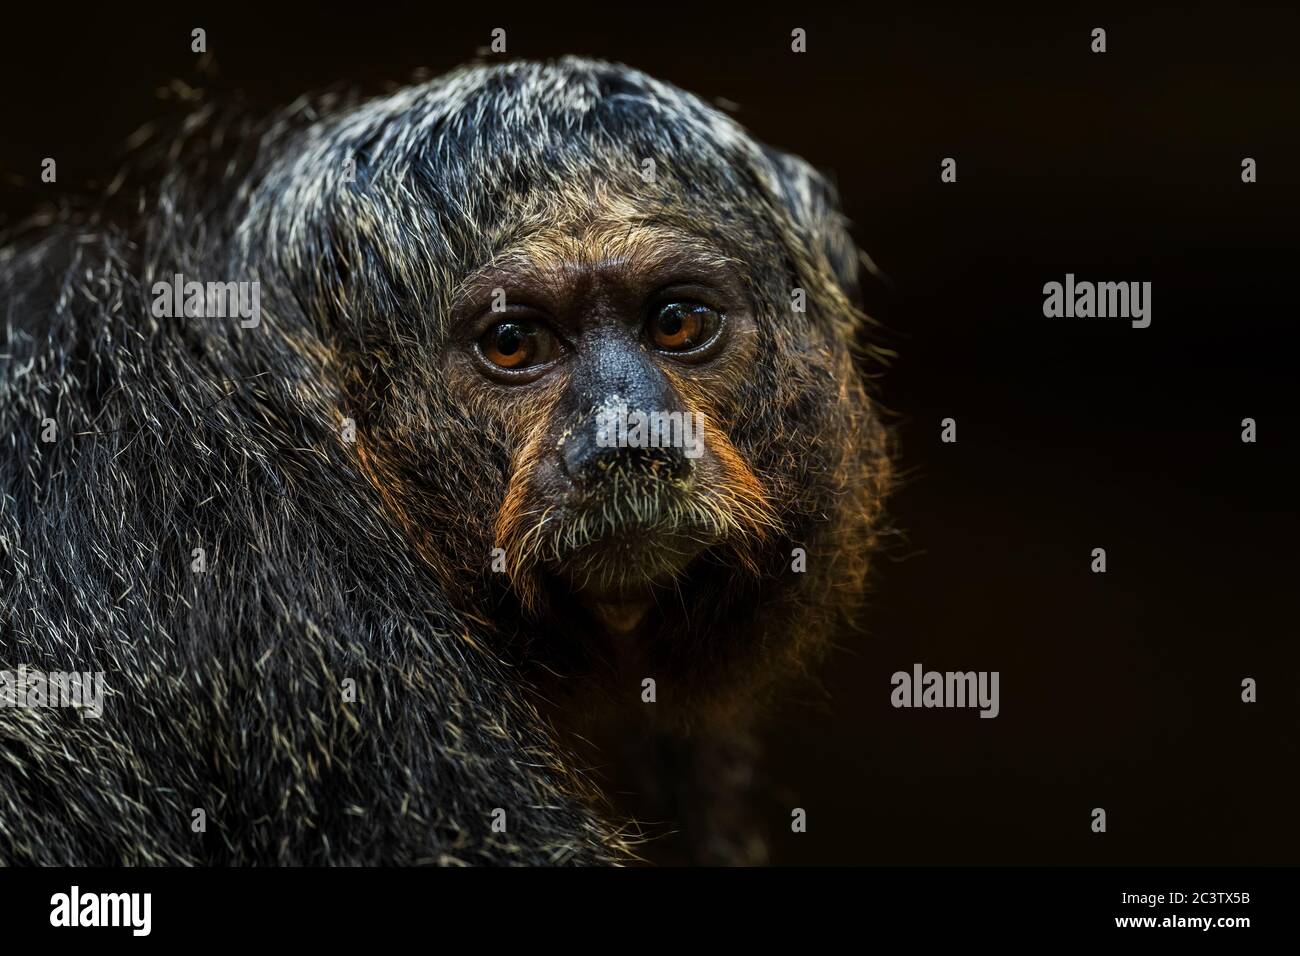 Guianan Saki - Pithecia pithecia, hermoso y raro primate tímido de los bosques tropicales de América del Sur, Brasil. Foto de stock